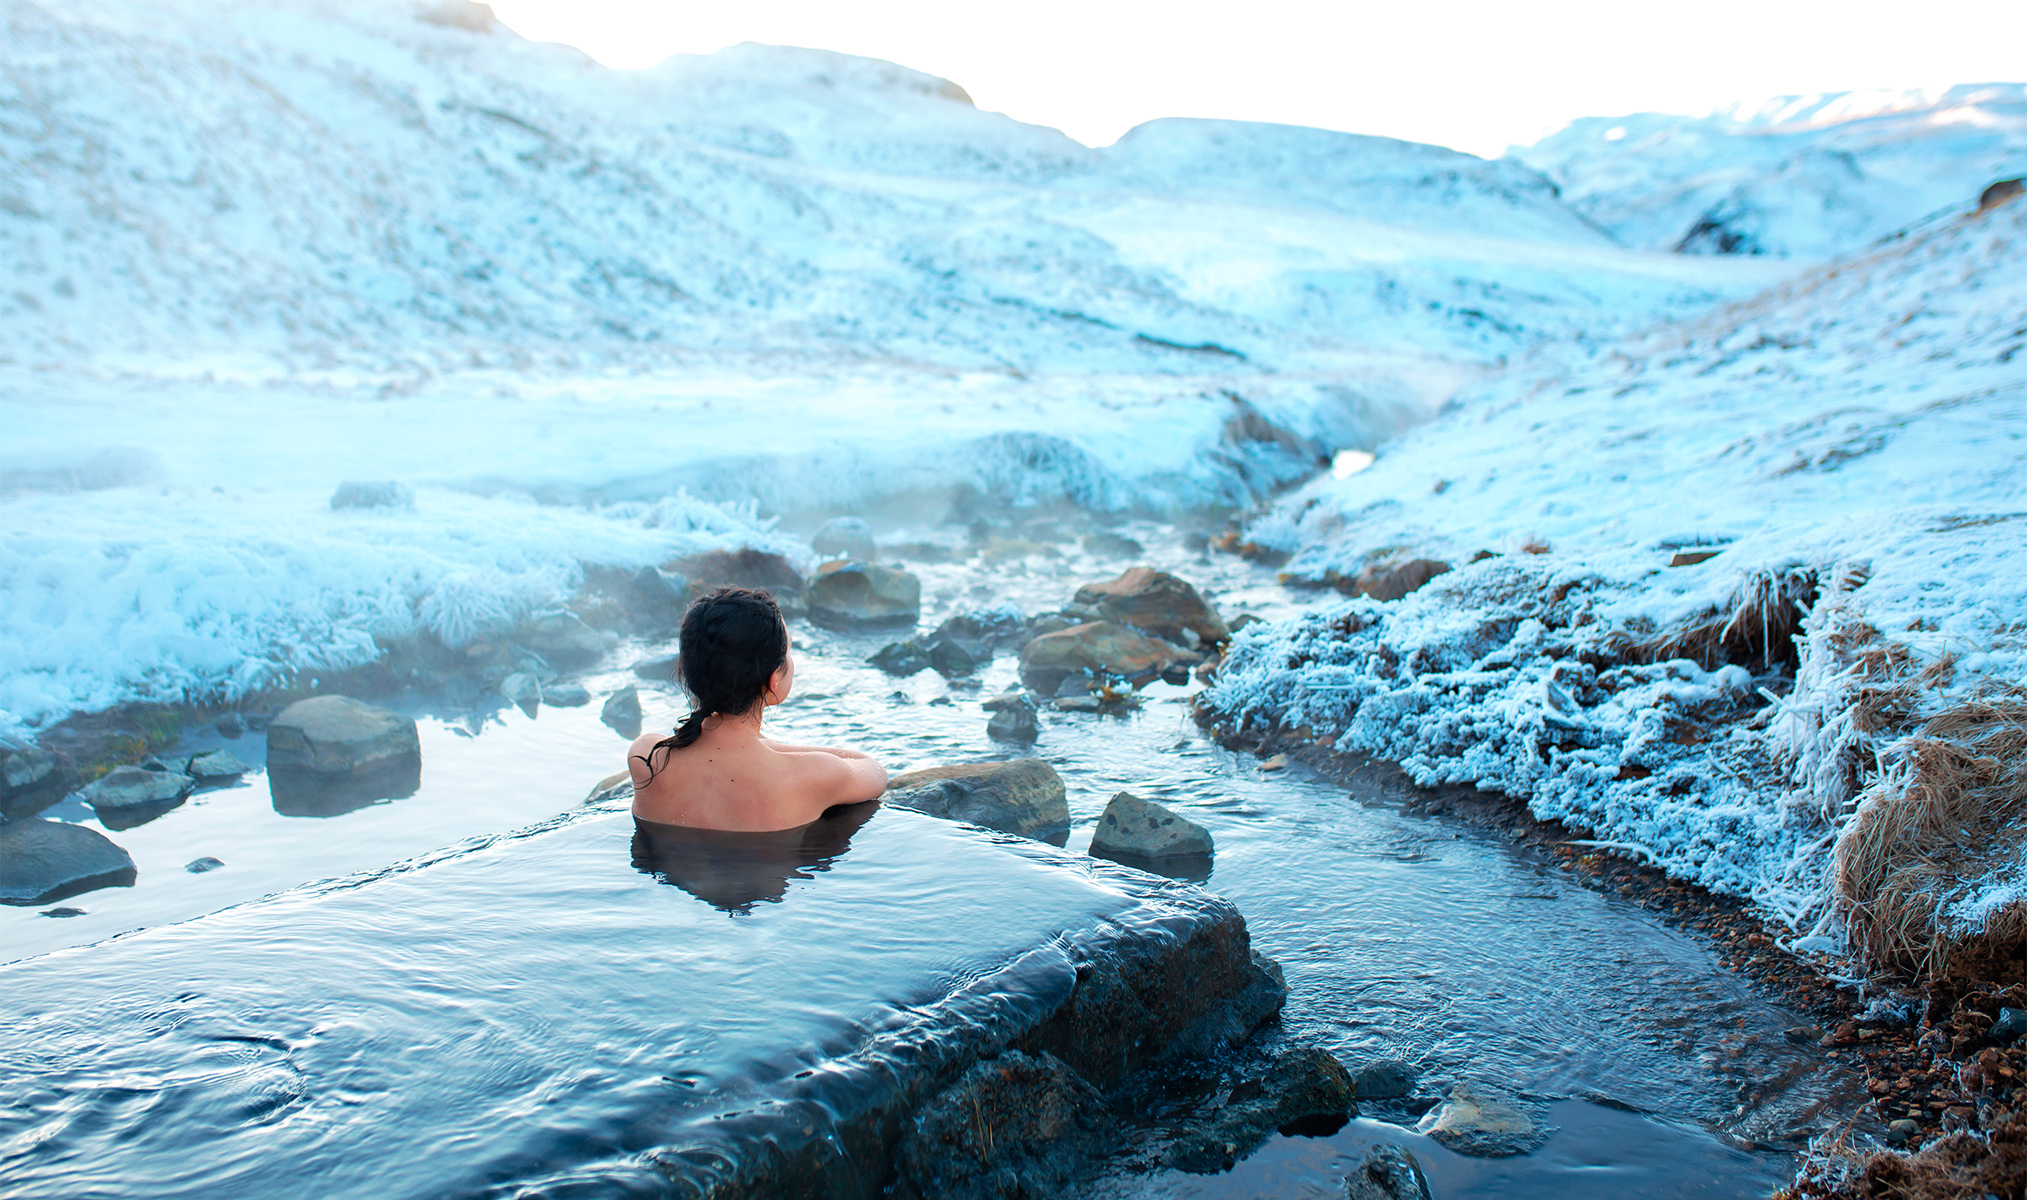 Купание в источнике зимой. Исландия термальные источники ландманналёйгар. Купание в теплом источнике зимой. Зимнее купание. Камчатка зимой.